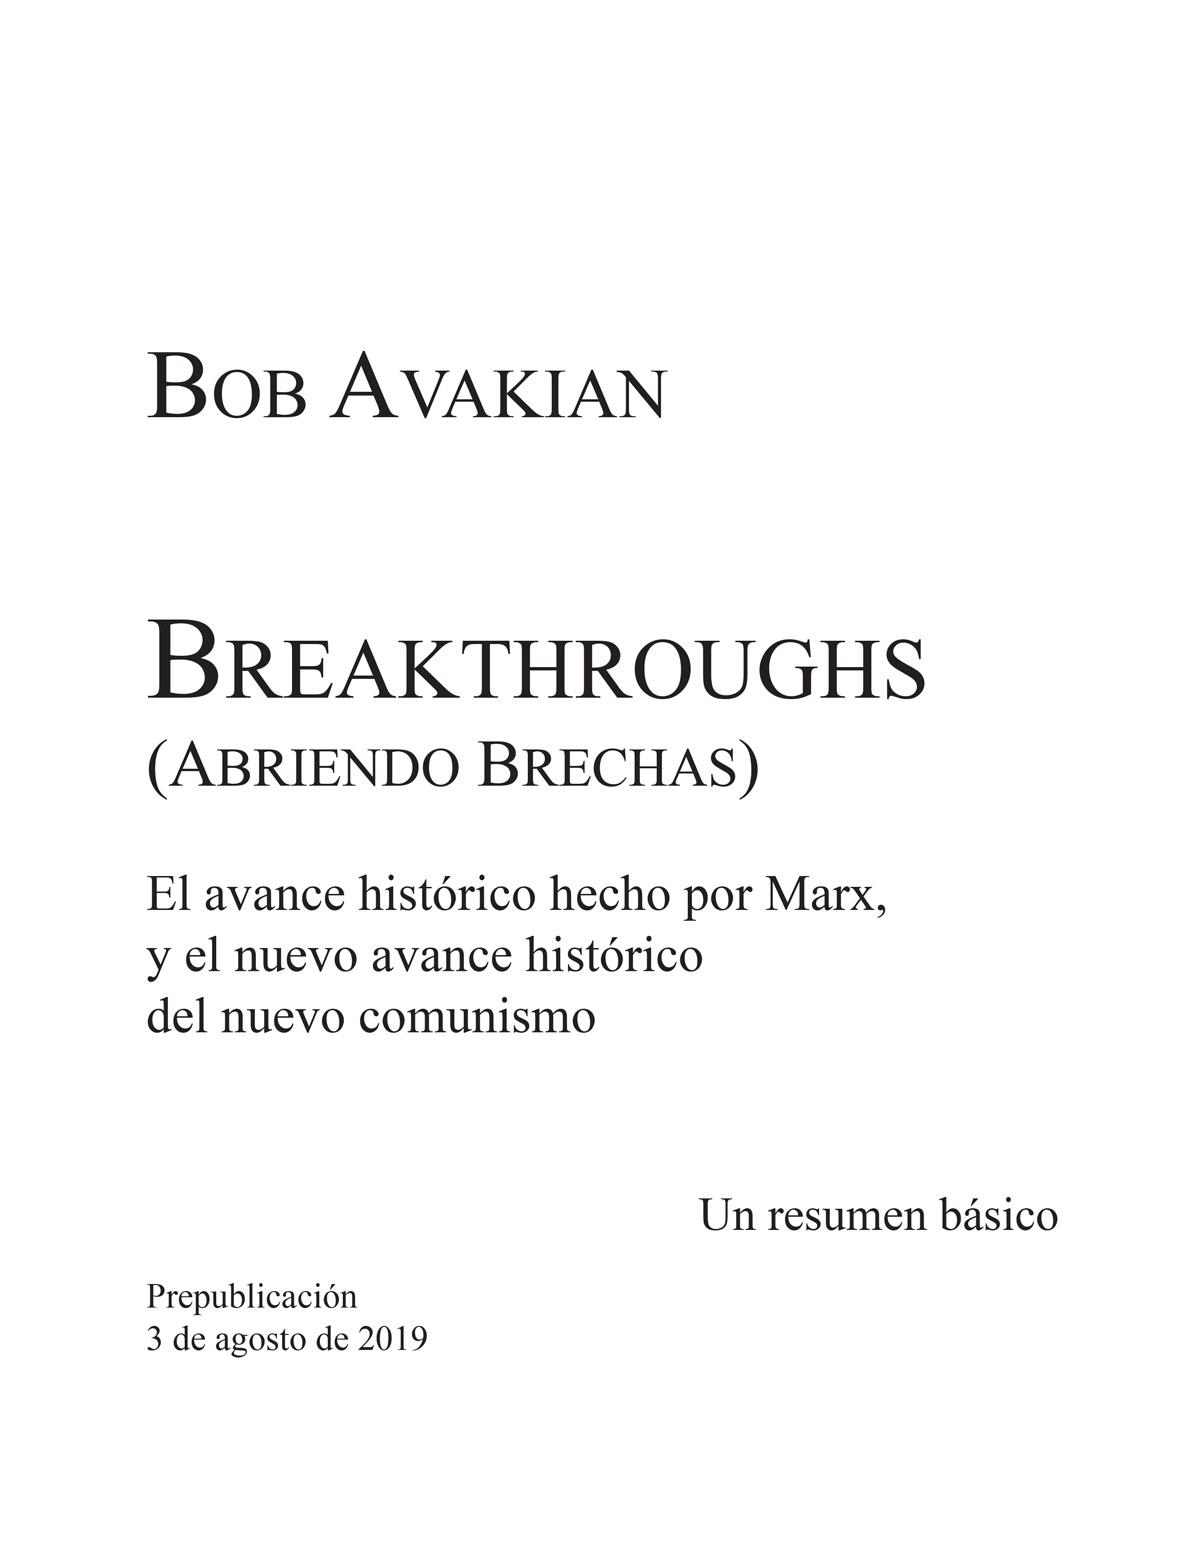 Breakthroughs-cover-1200 Spanish